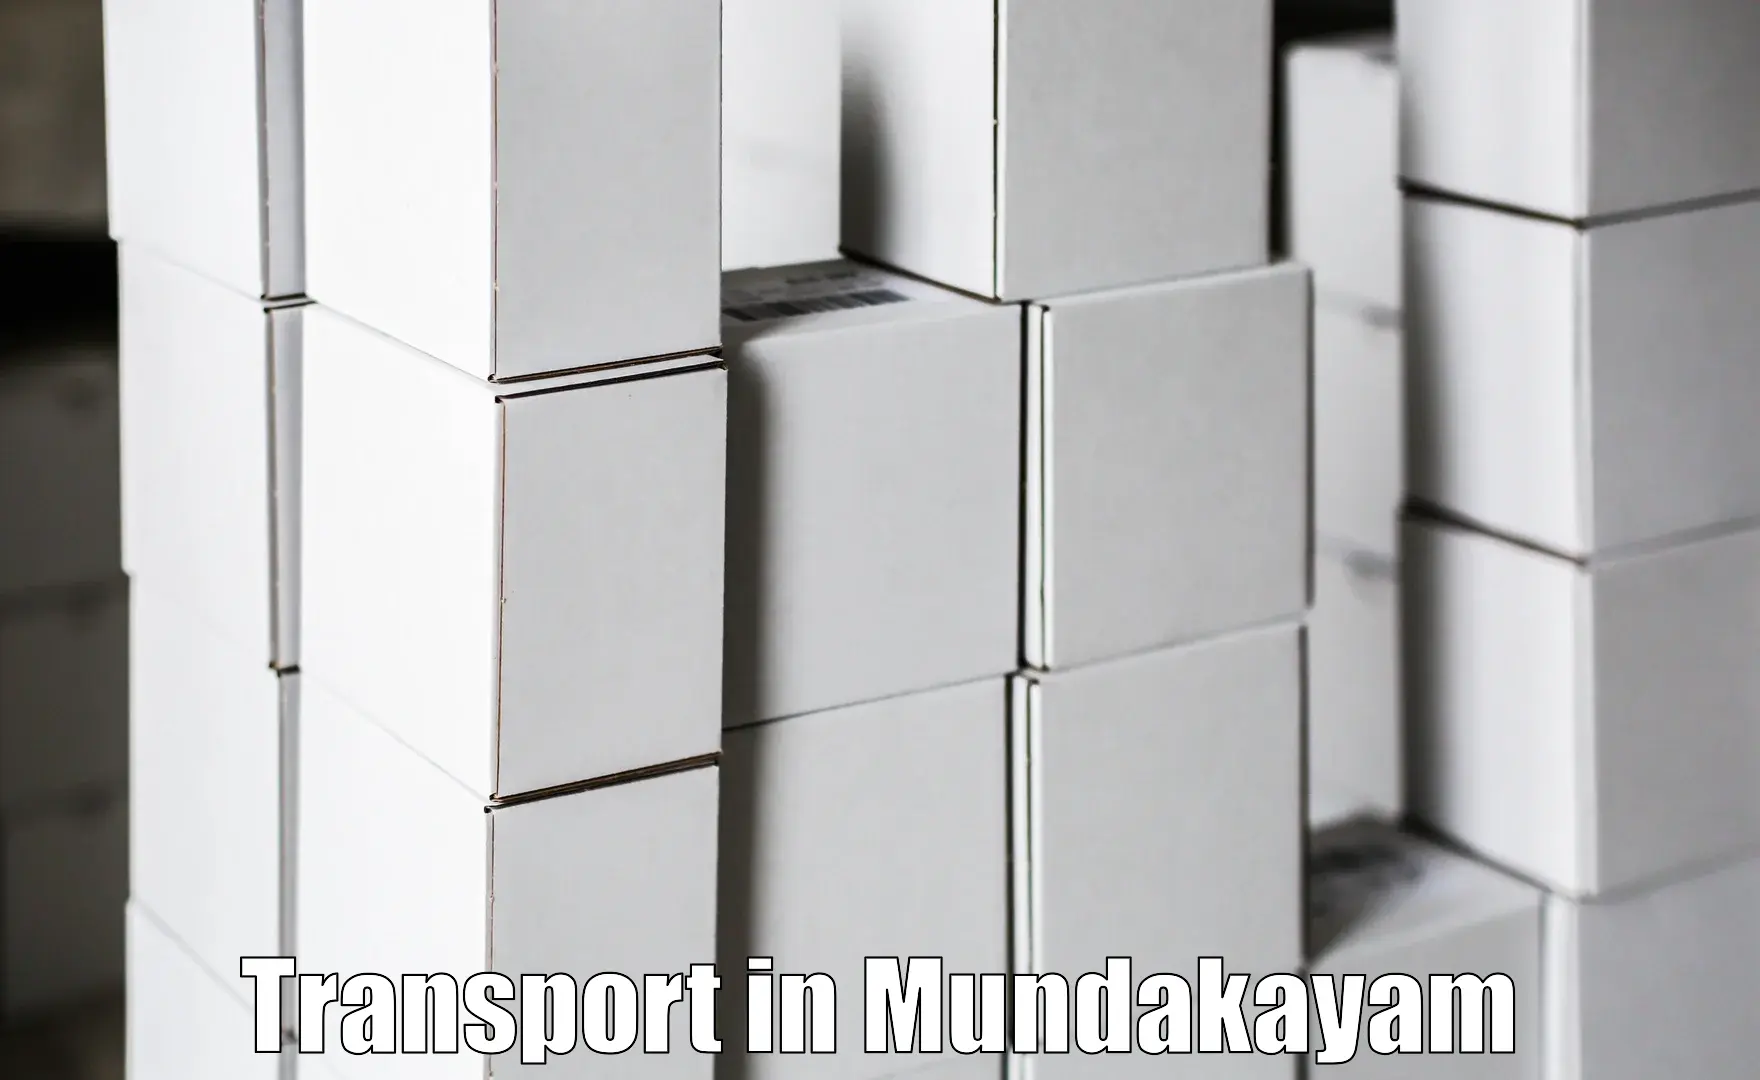 Intercity transport in Mundakayam